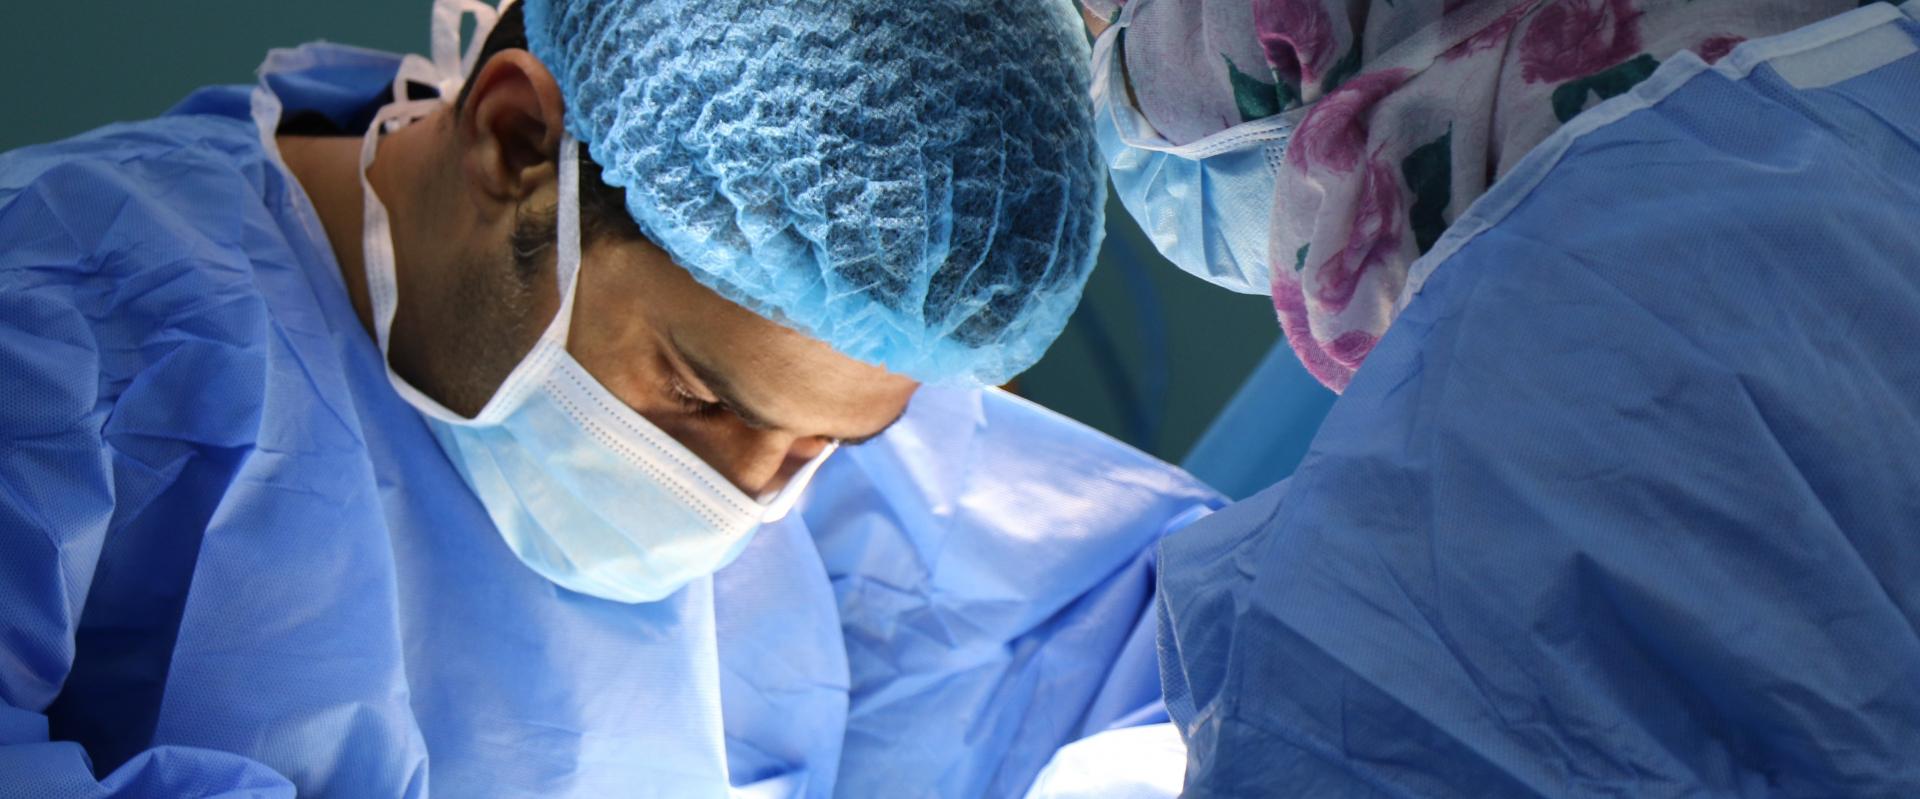 Więcej zabiegów chirurgii plastycznej w pandemii